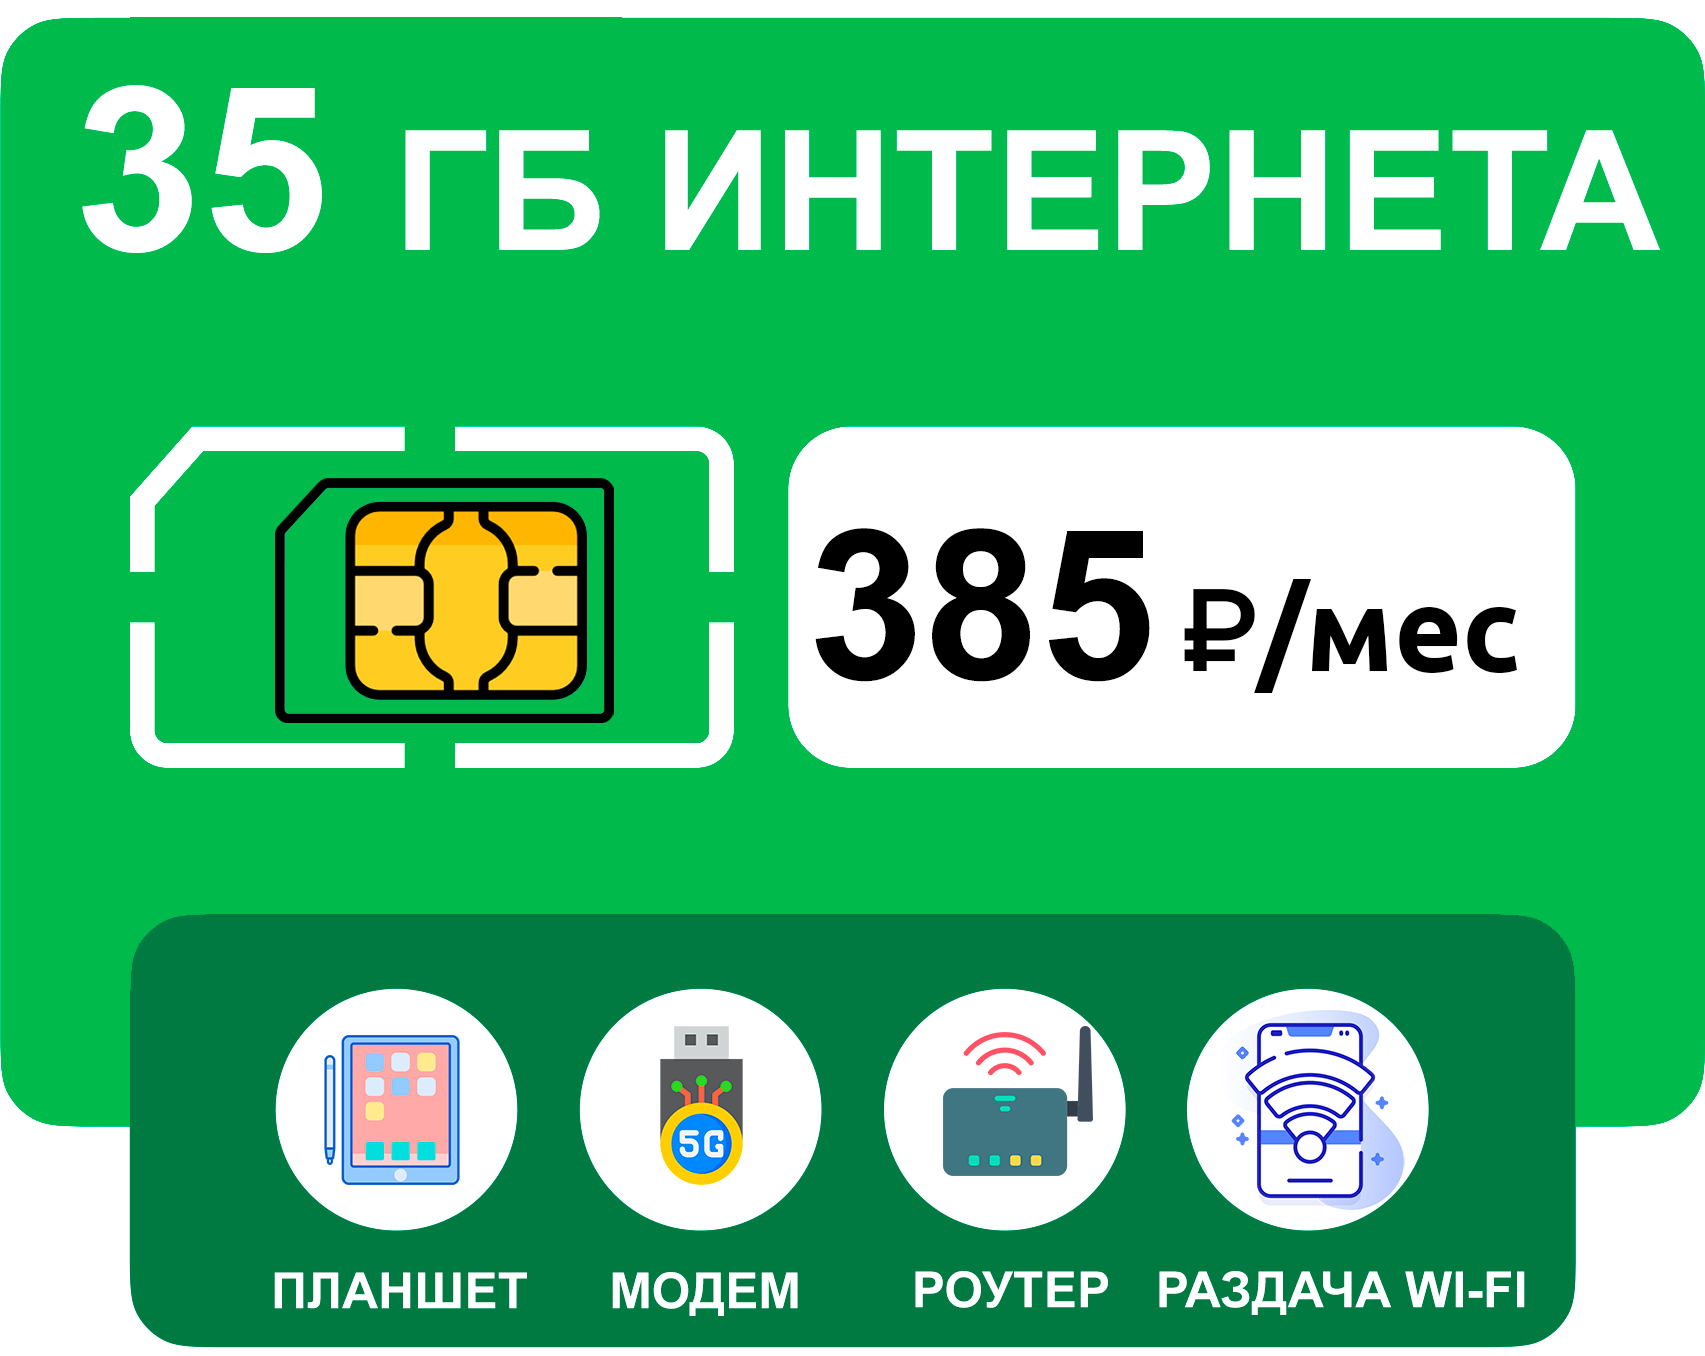 SIM-карта 35 гб интернета 3G/4G за 385 руб/мес (модемы роутеры планшеты) + раздача торренты (вся Россия)